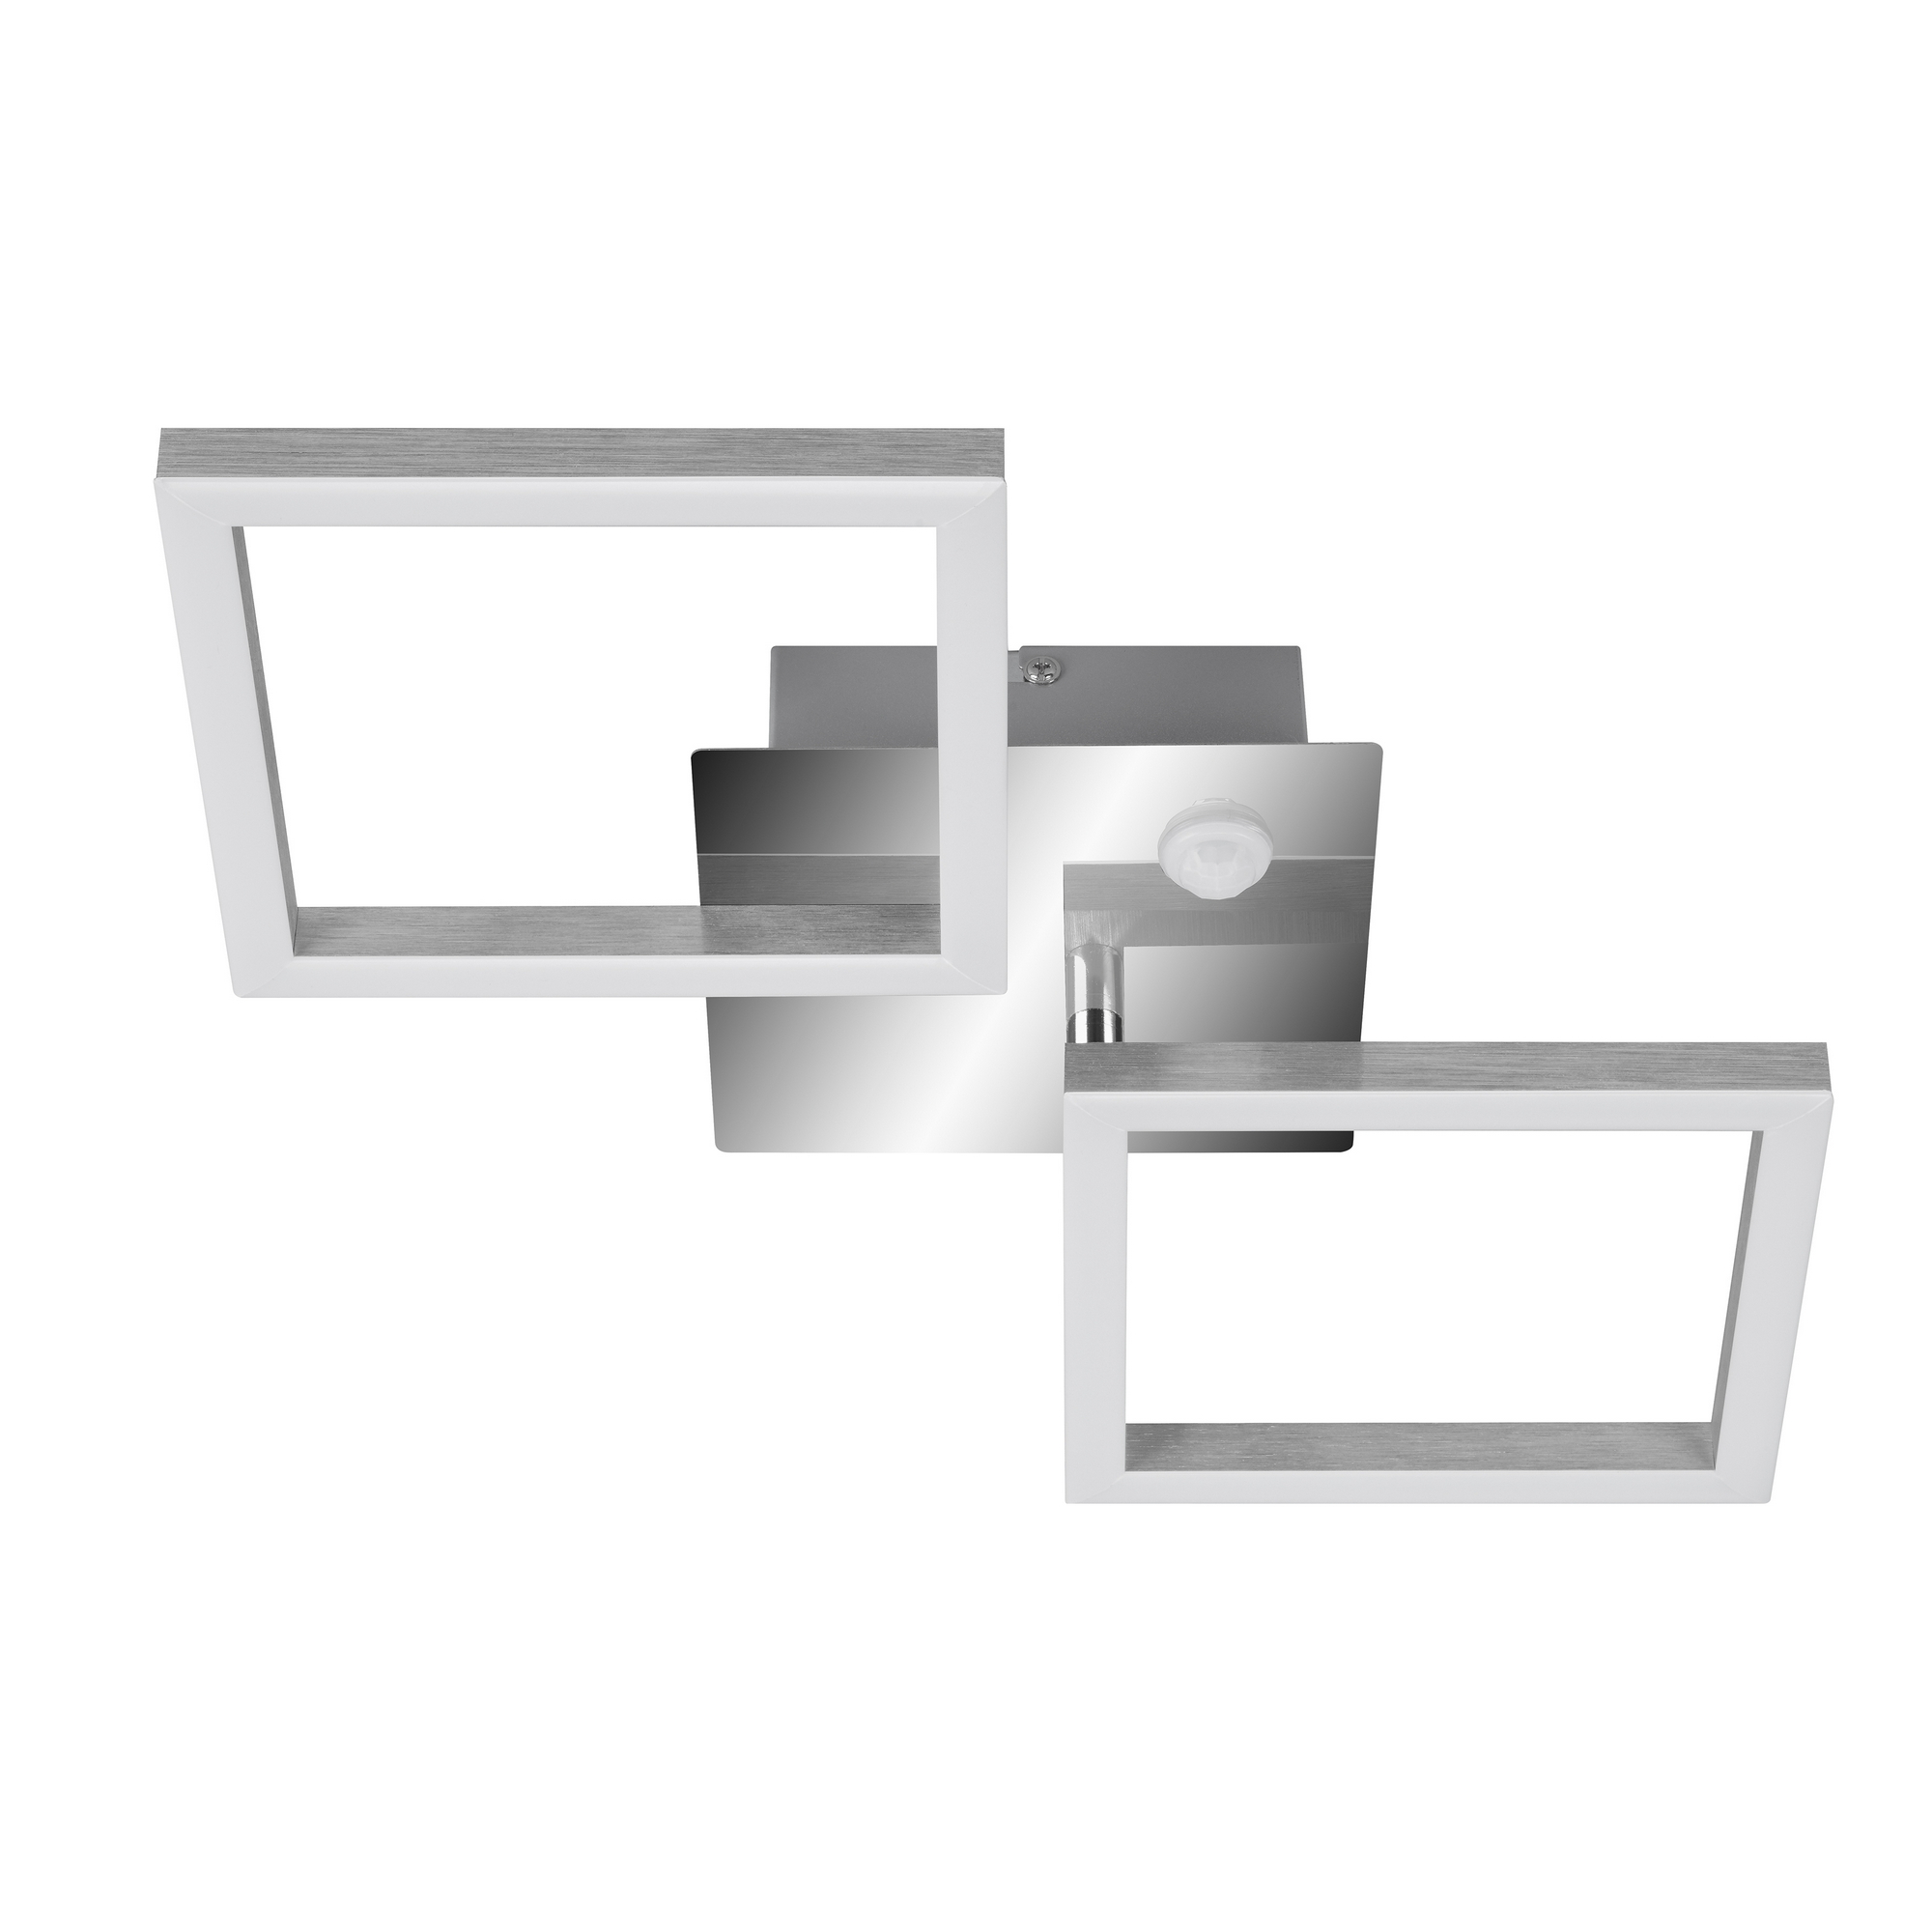 LED-Deckenleuchte 'Frame' chrom/aluminium 47 x 22,6 x 7,4 cm, mit Bewegungsmelder + product picture